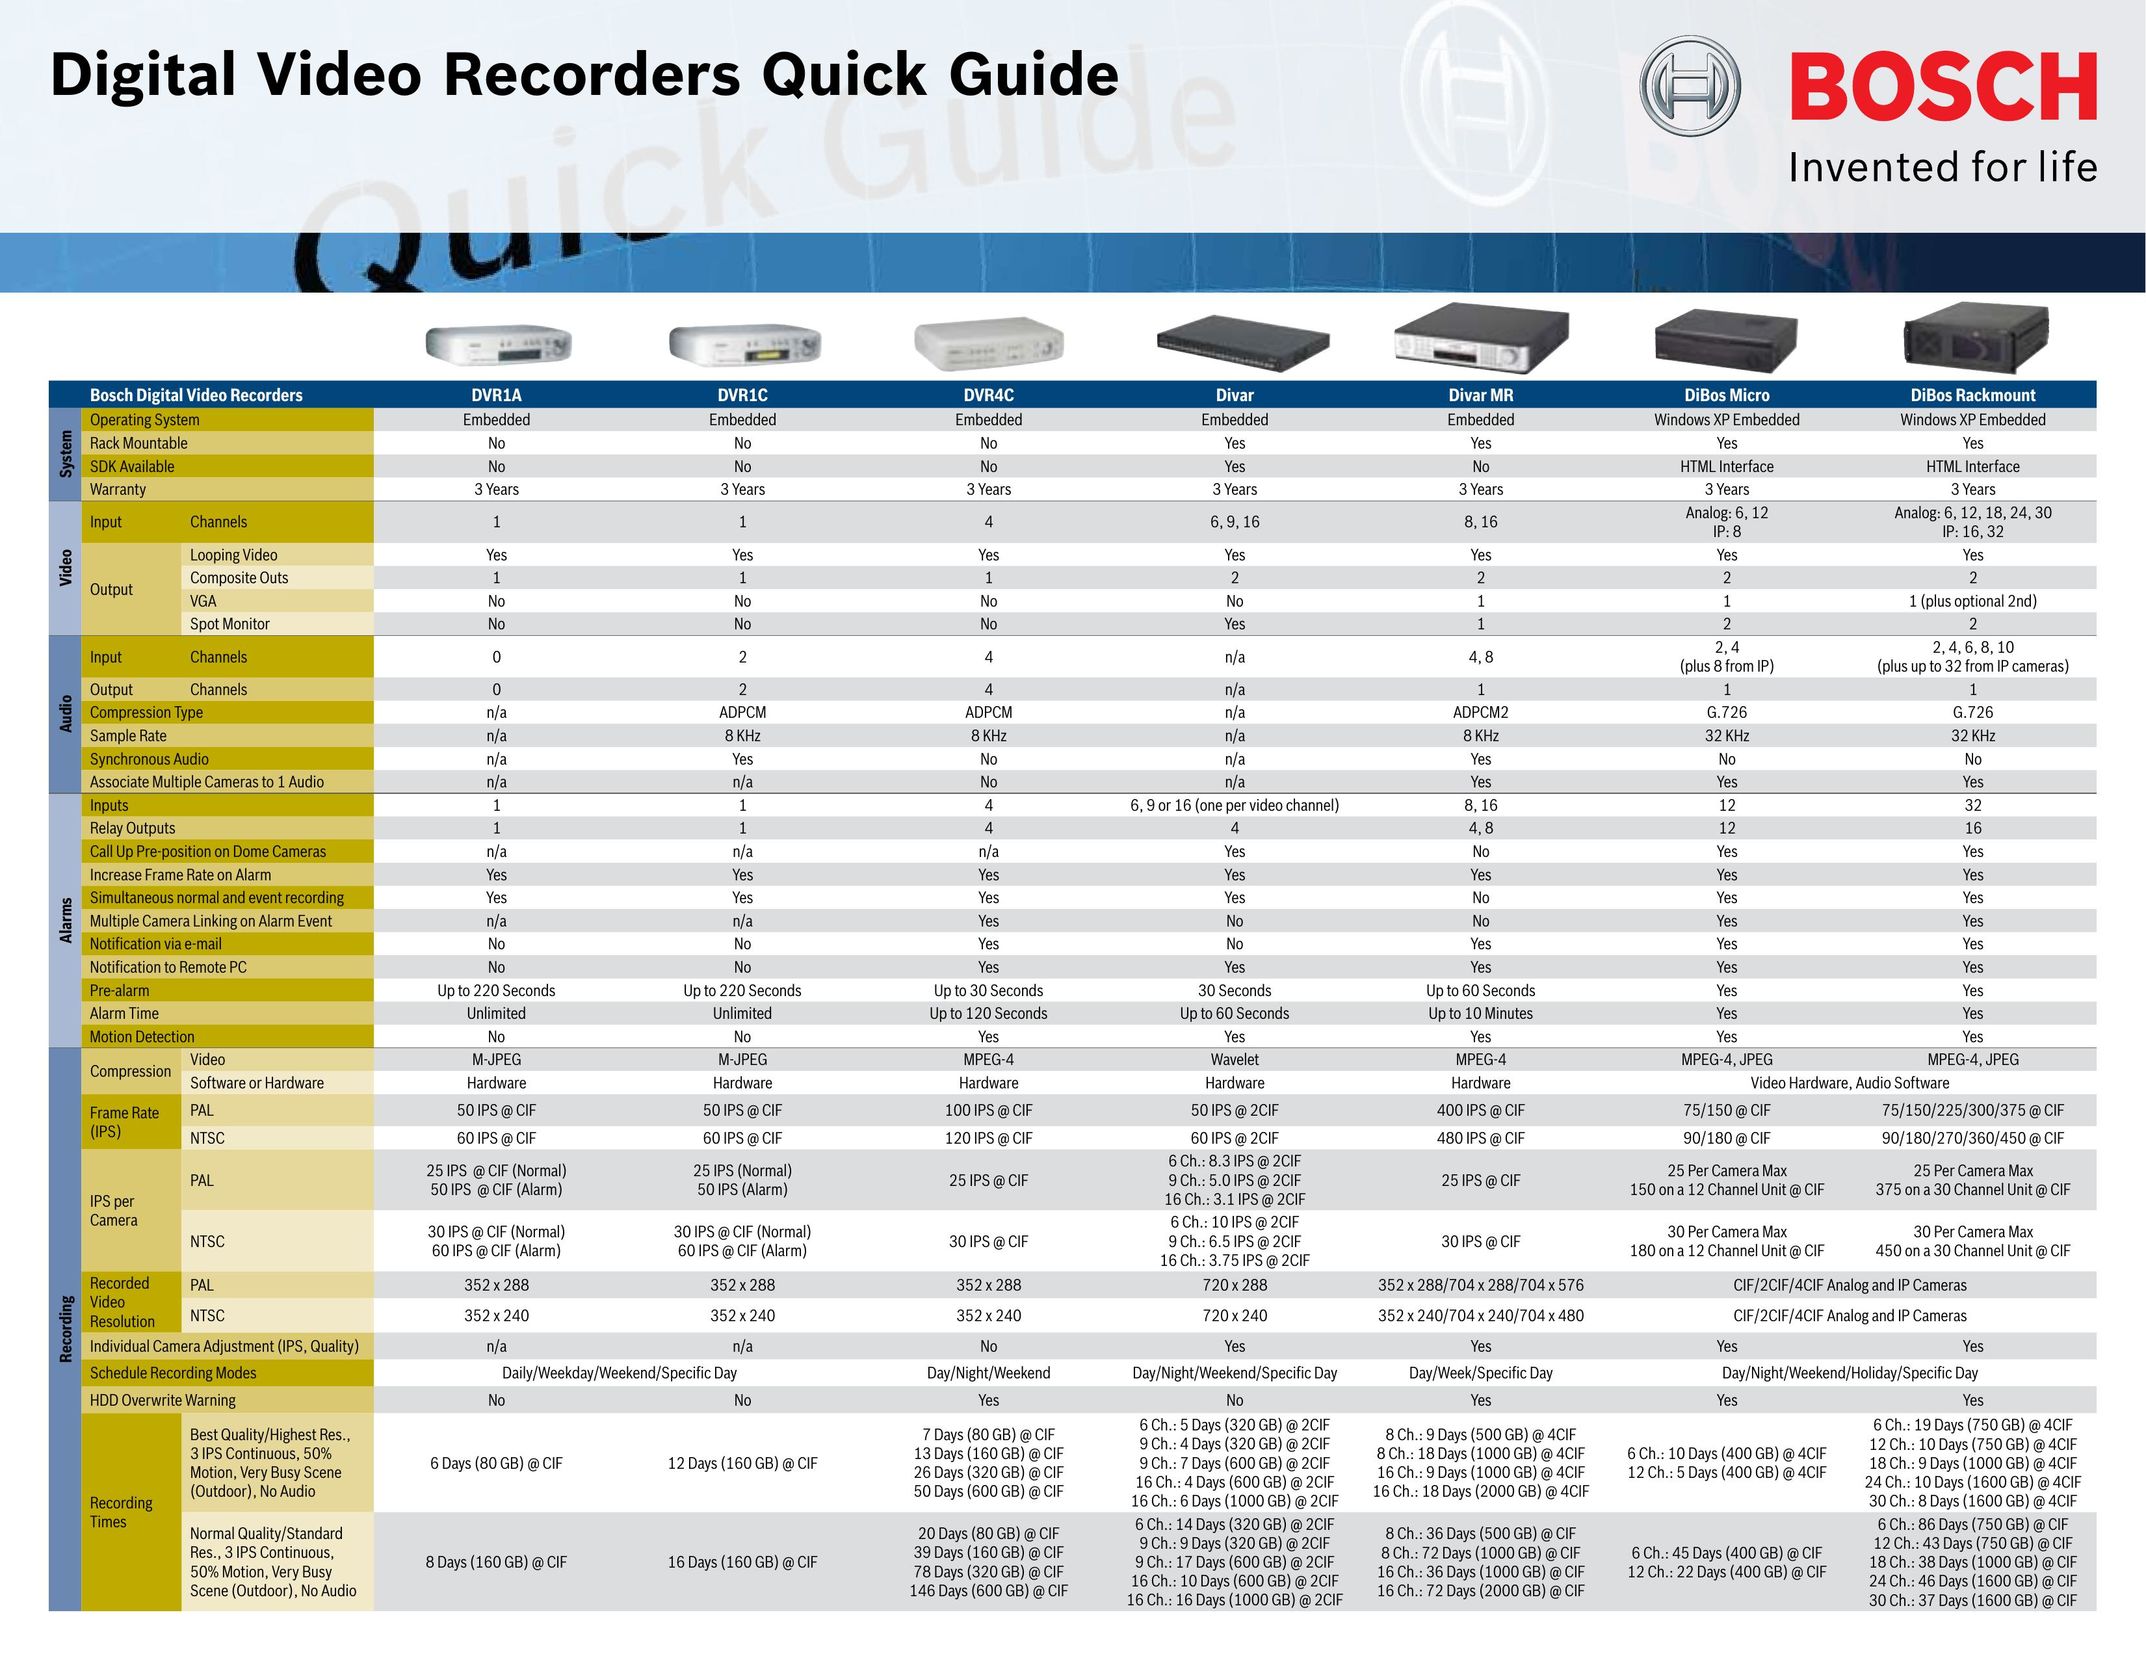 Bosch Appliances DIBOS MICRO DVR User Manual